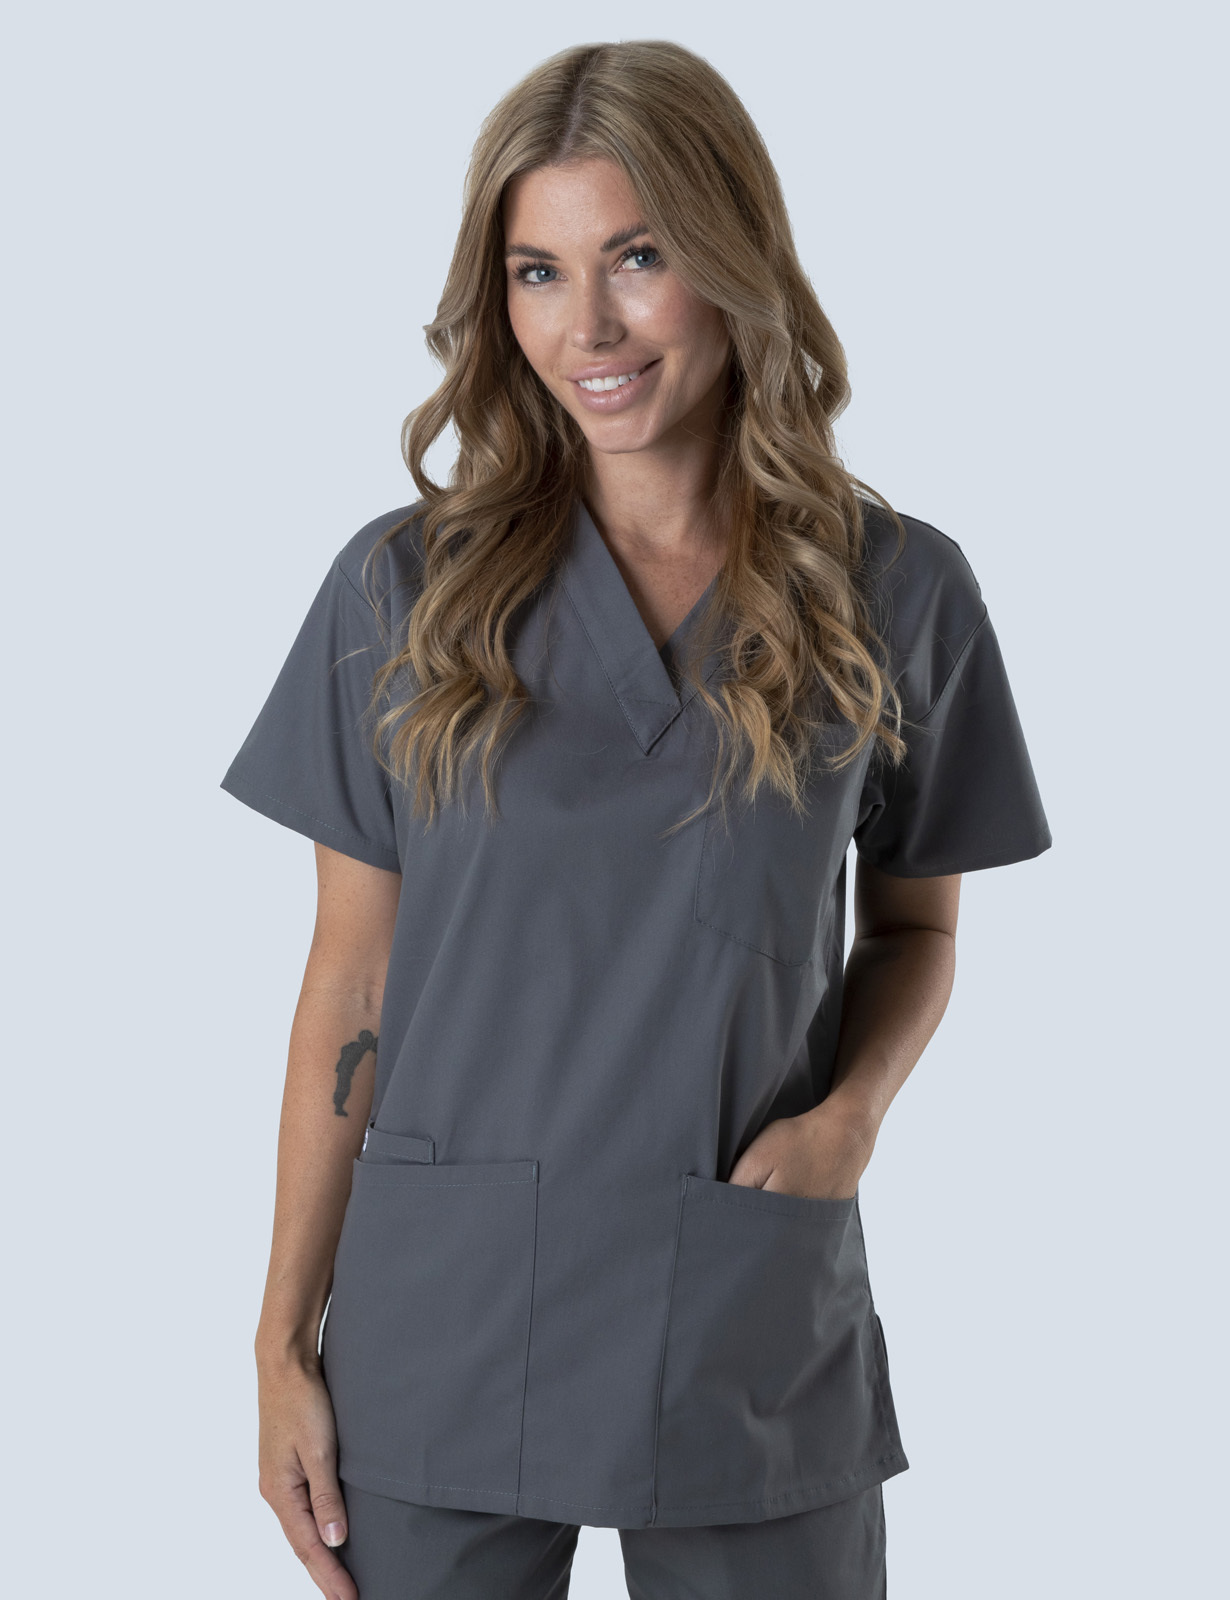 Queensland Children's Hospital Emergency Department Nurse Practitioner Uniform Top Bundle  (4 Pocket Top  in Steel Grey  incl Logos)